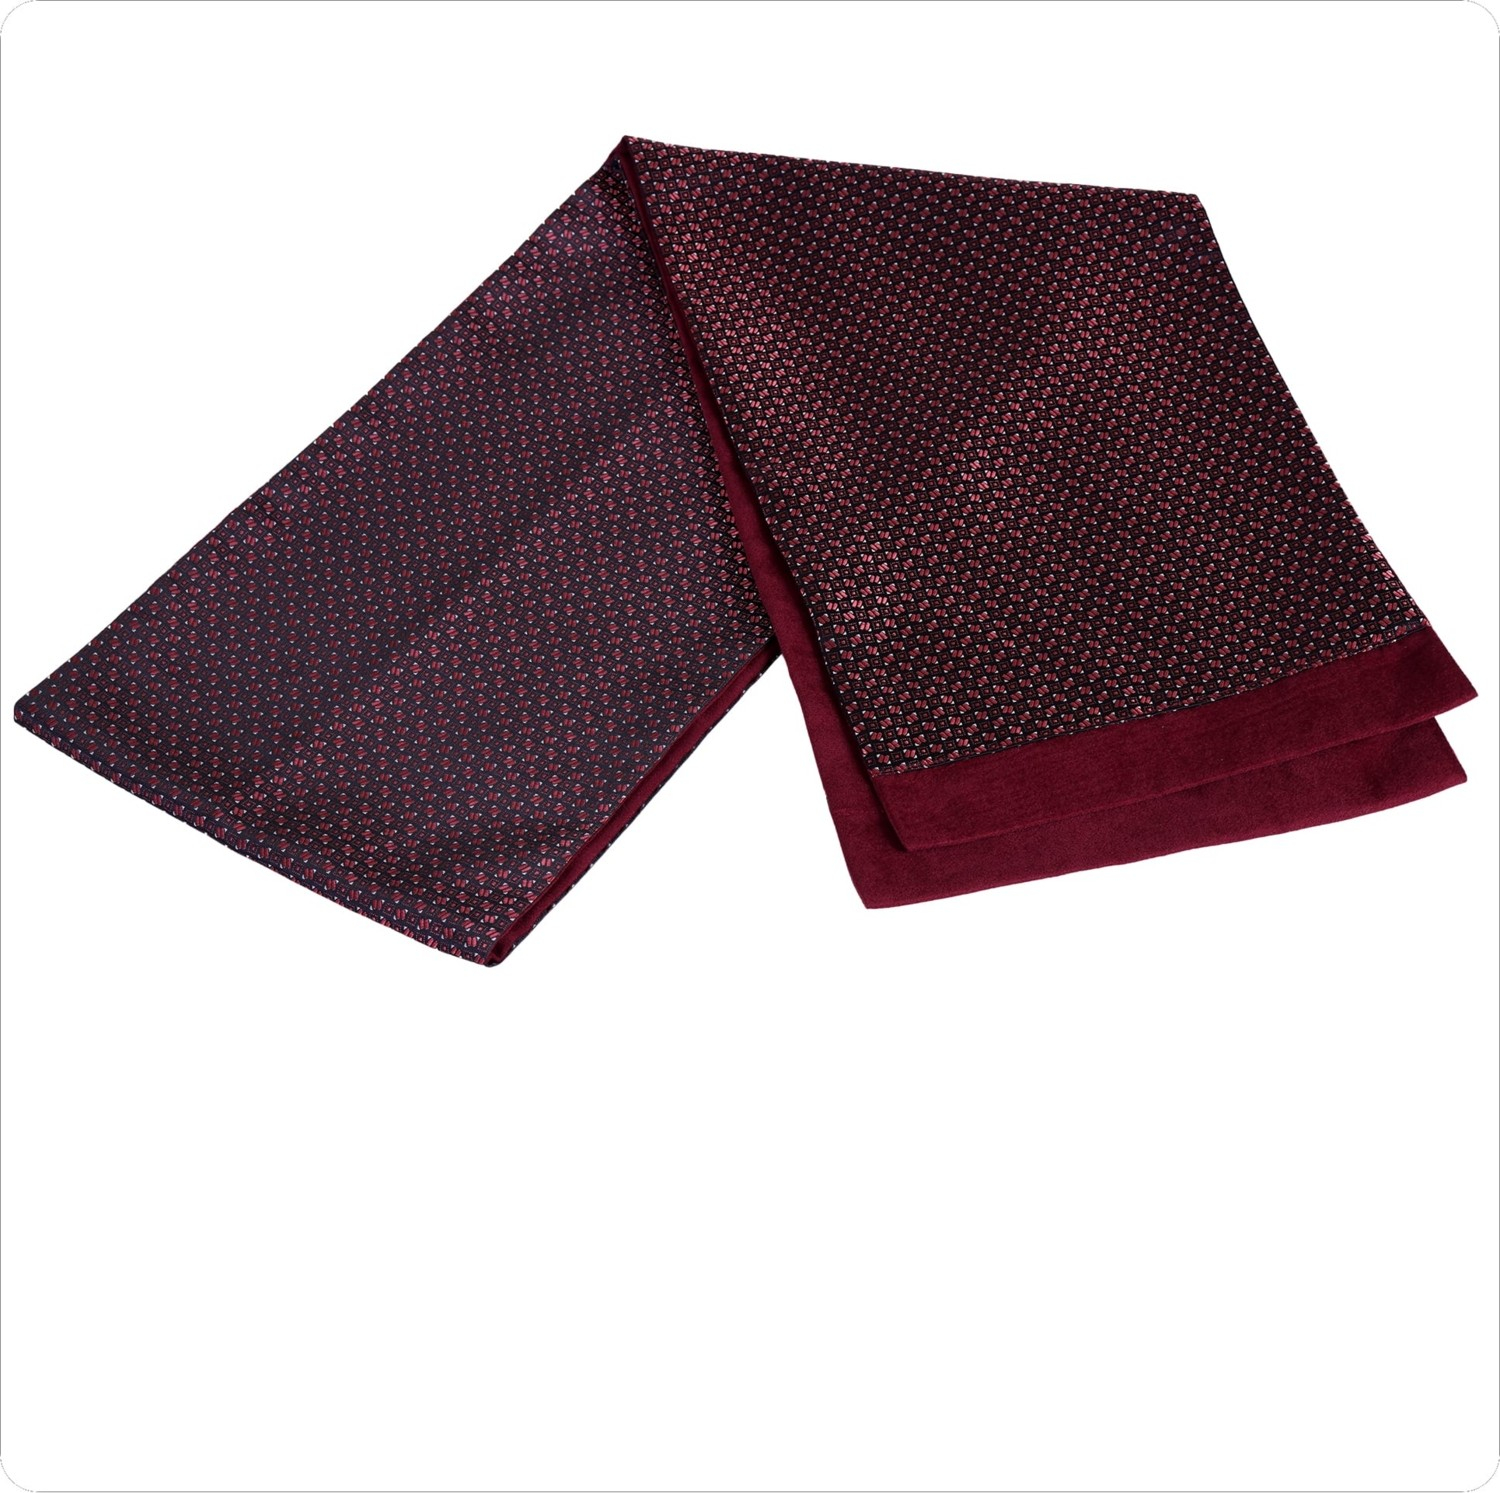 Эксклюзивный шарф Exve красного цвета с красным квадратным узором из шерсти с двух сторон.